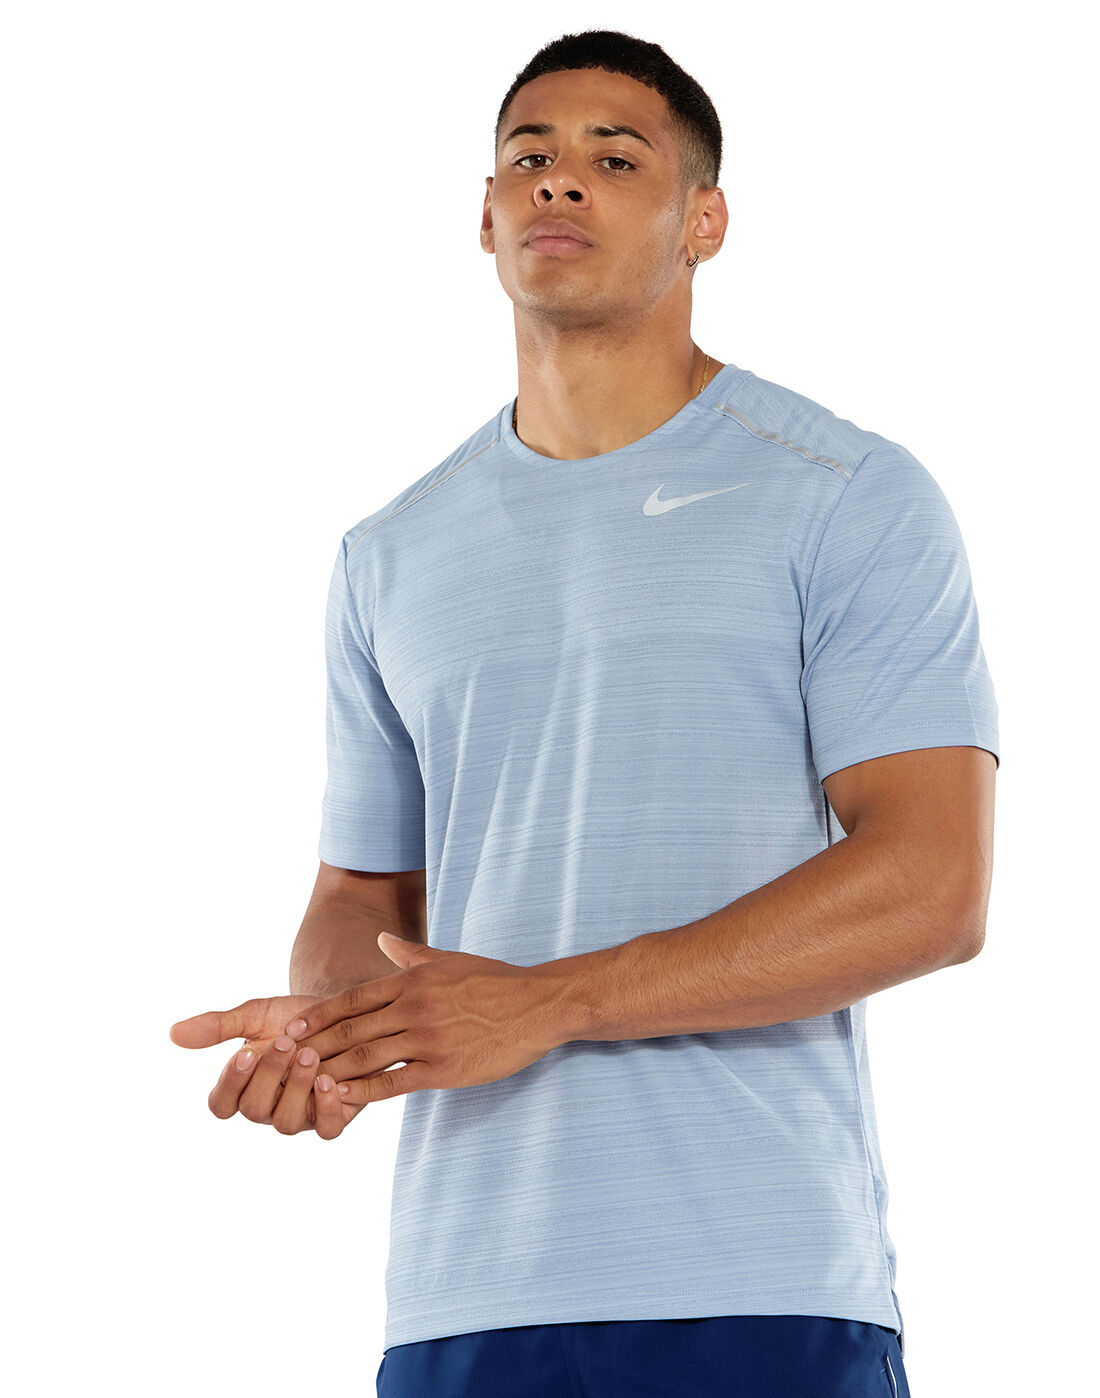 Nike Mens Dry Miller T-shirt - Blue 